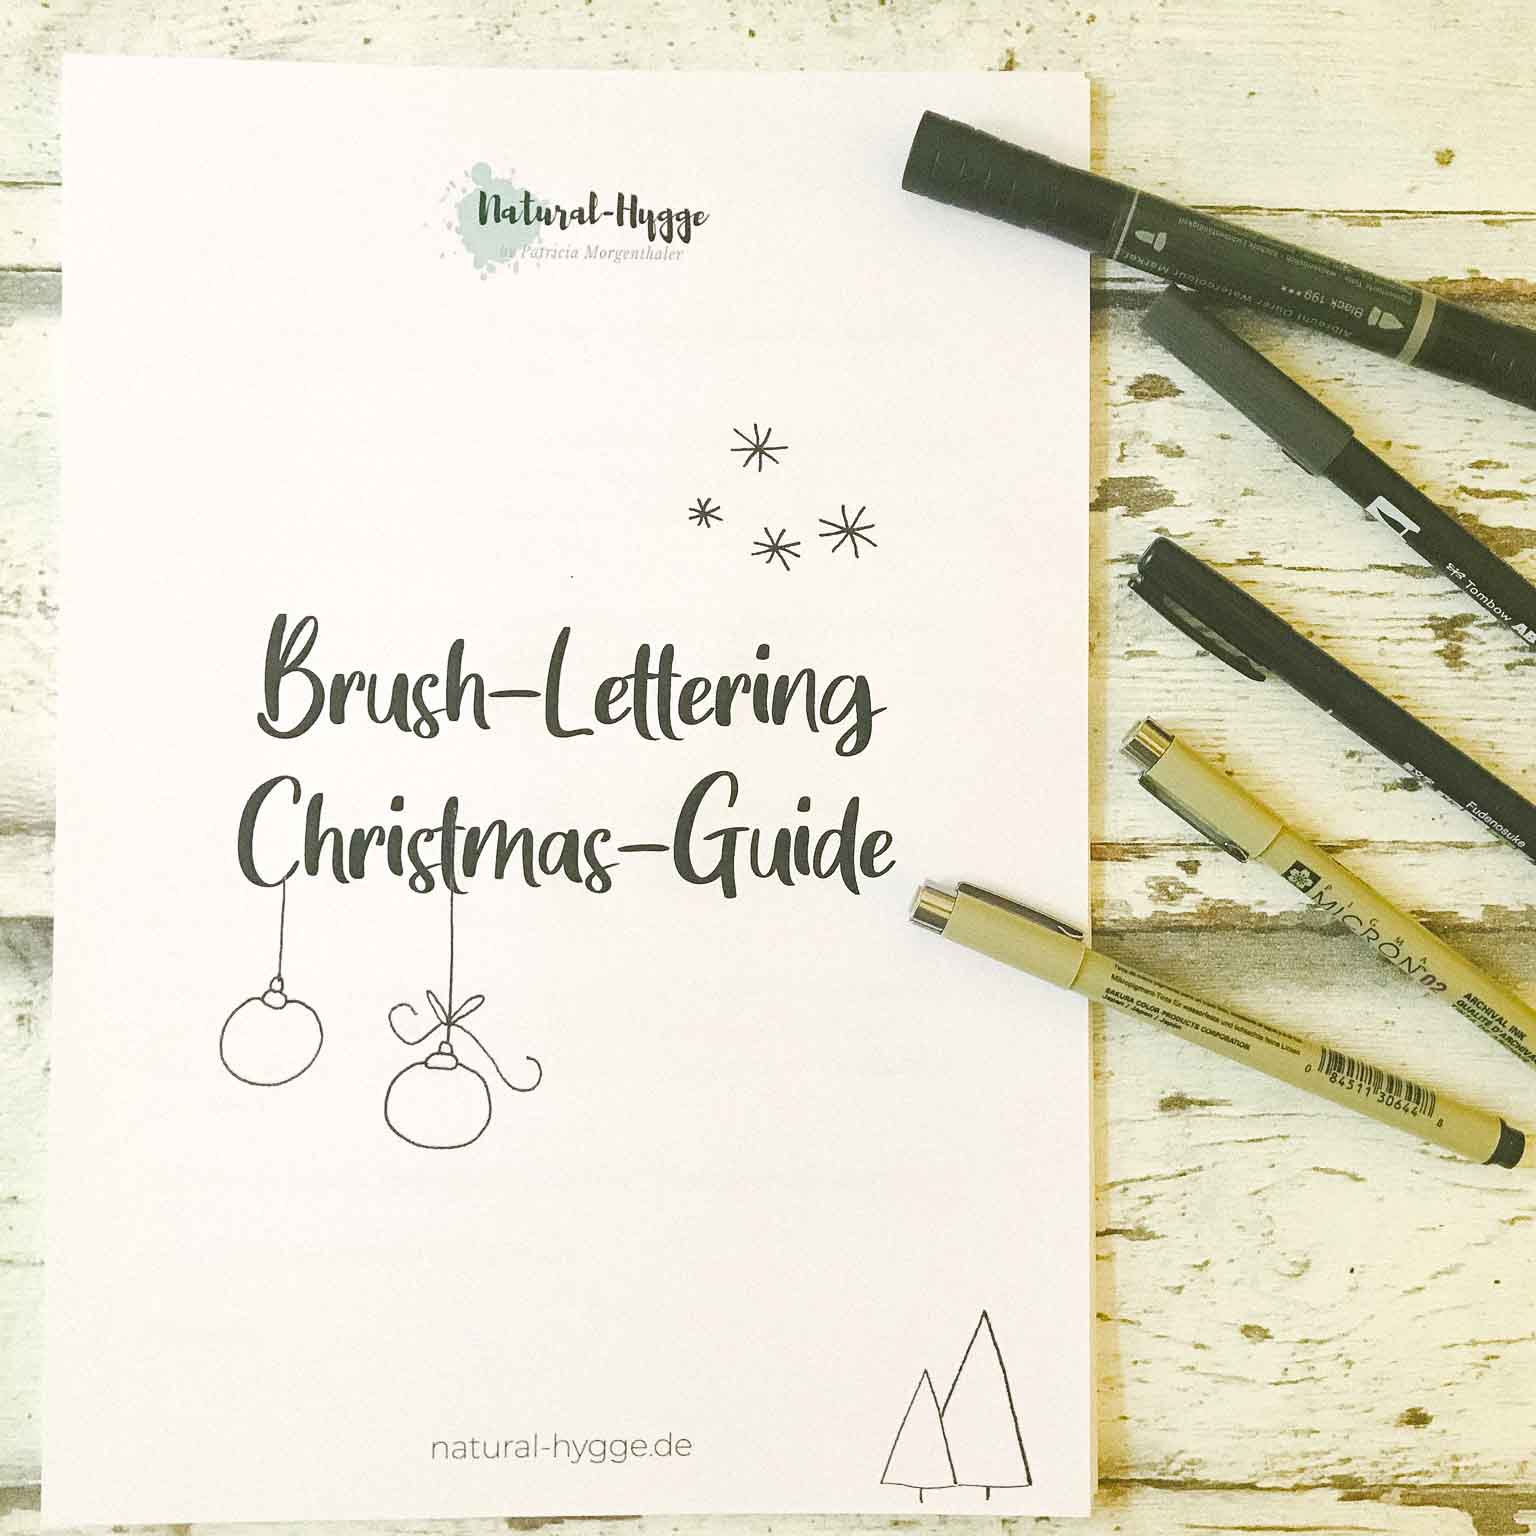 Brush-Lettering Christmas-Guide Vol. I 2